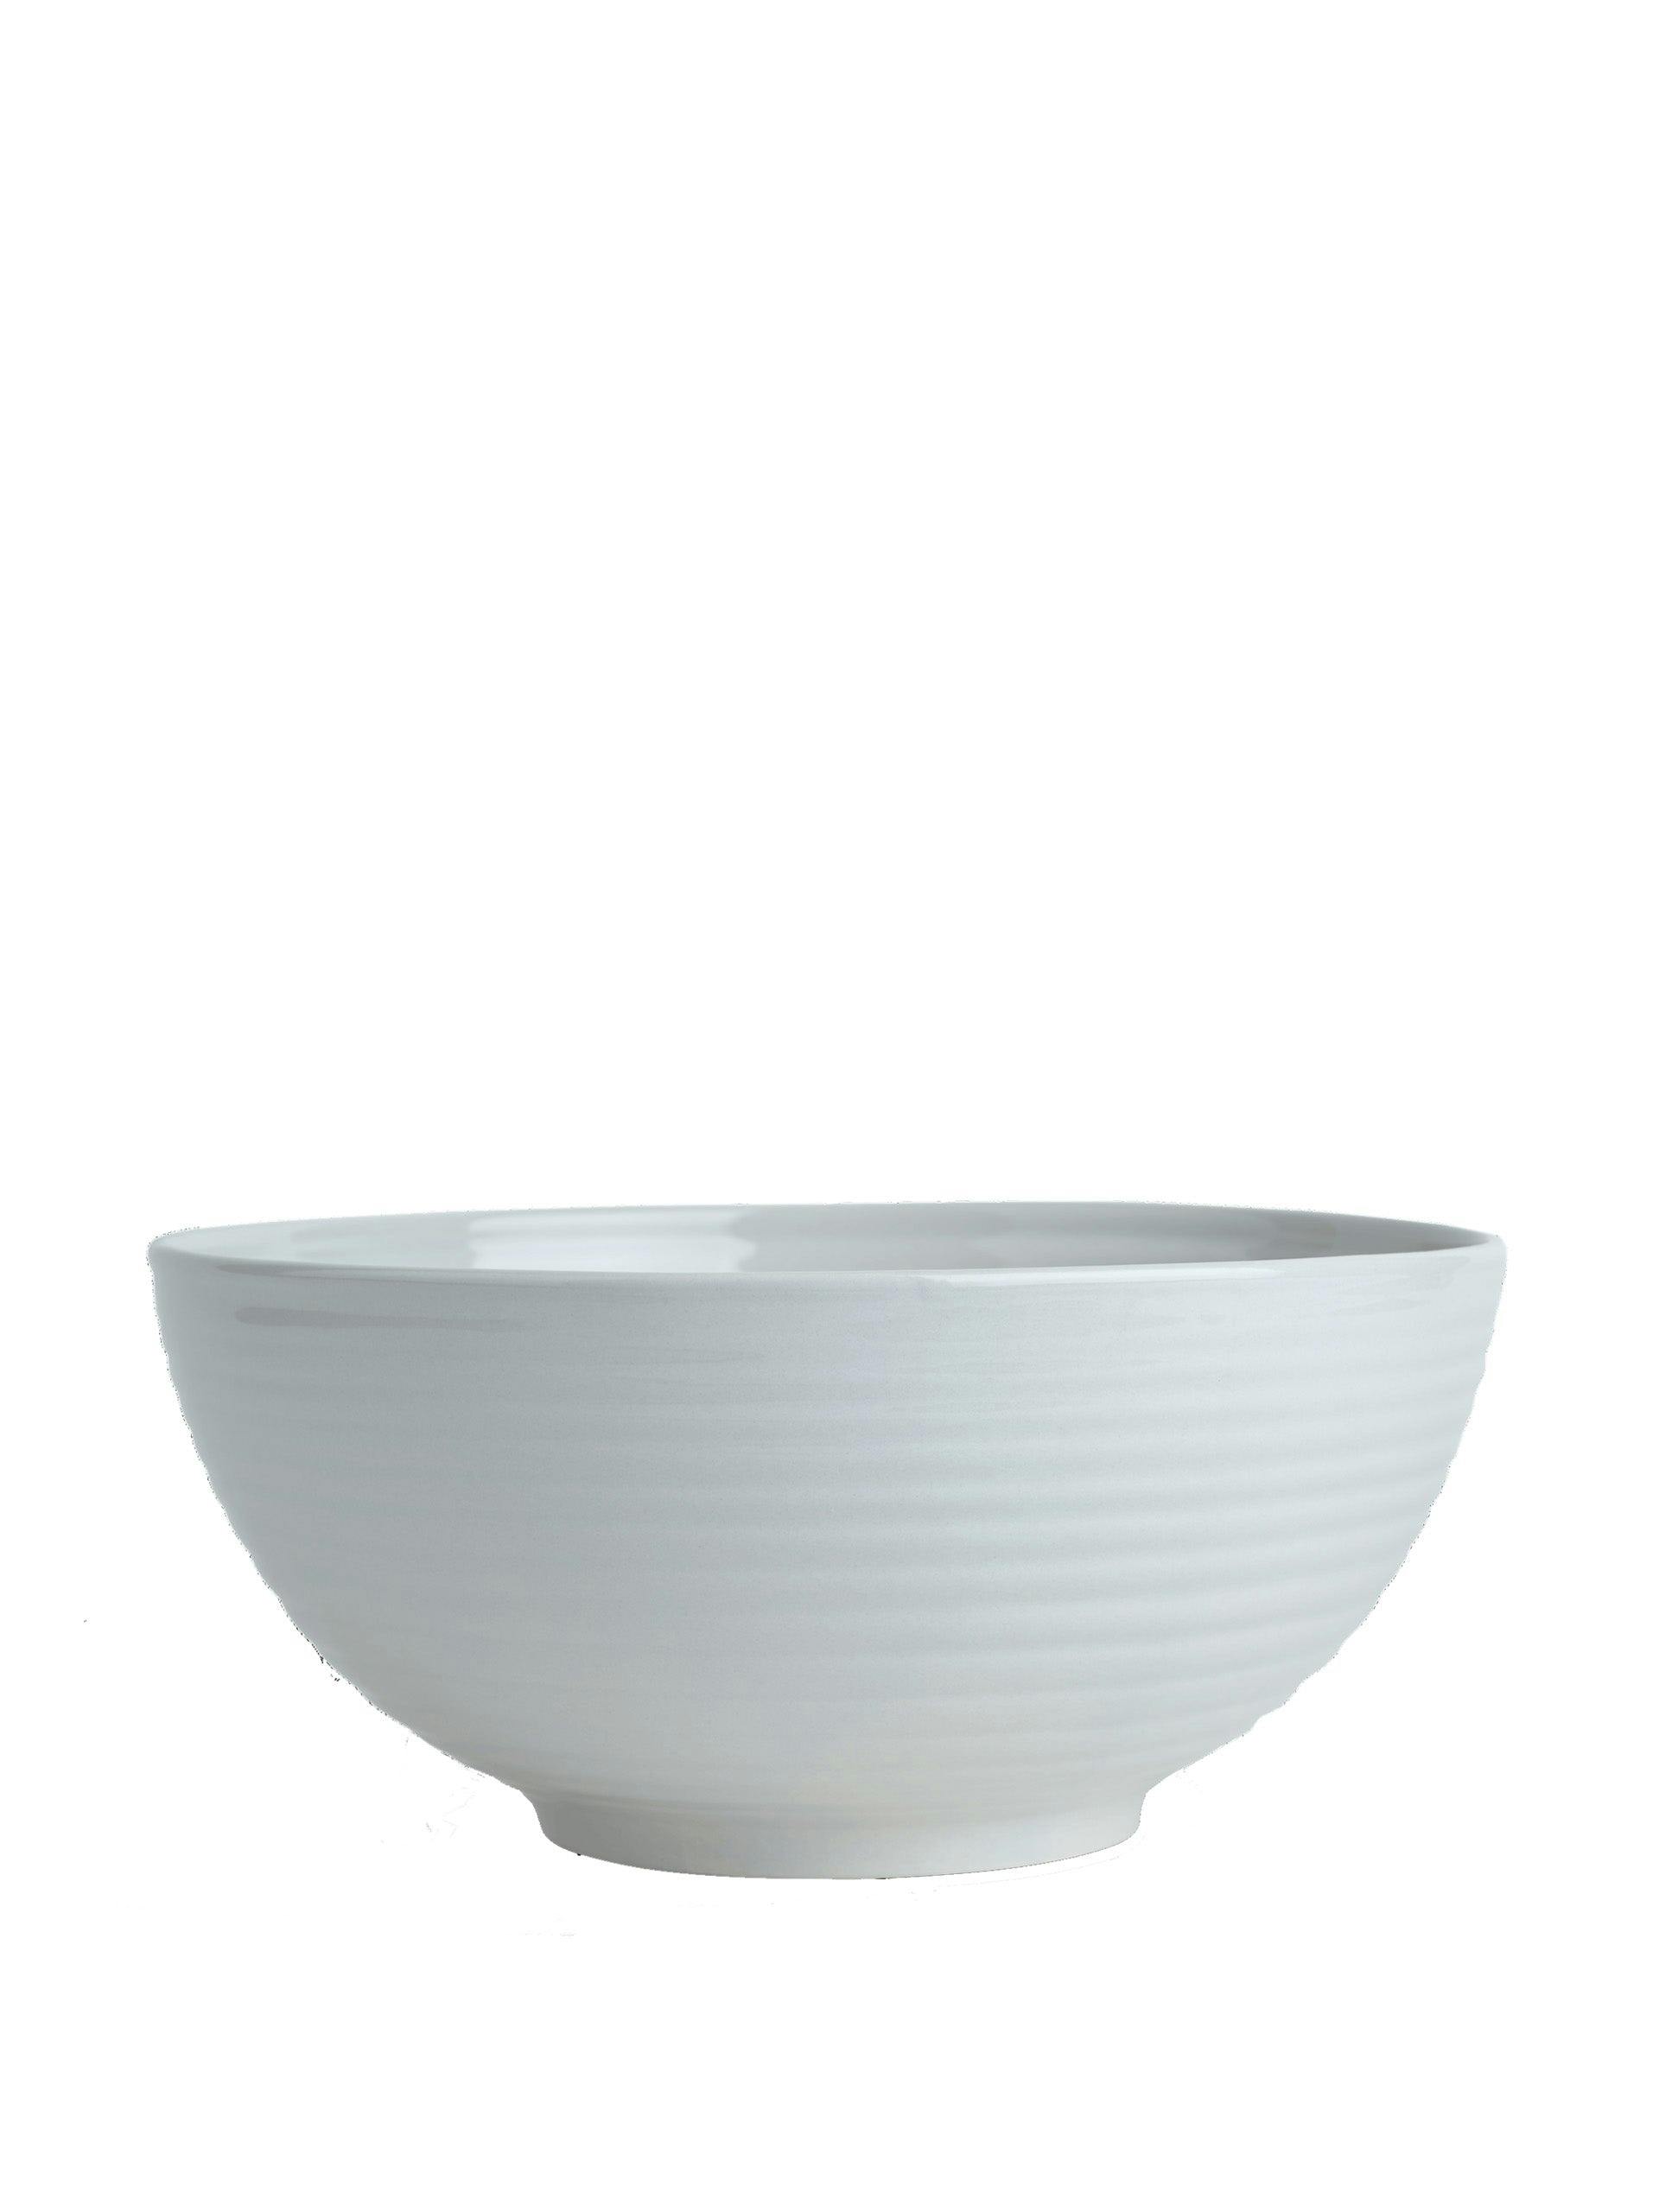 Lewes serving bowl